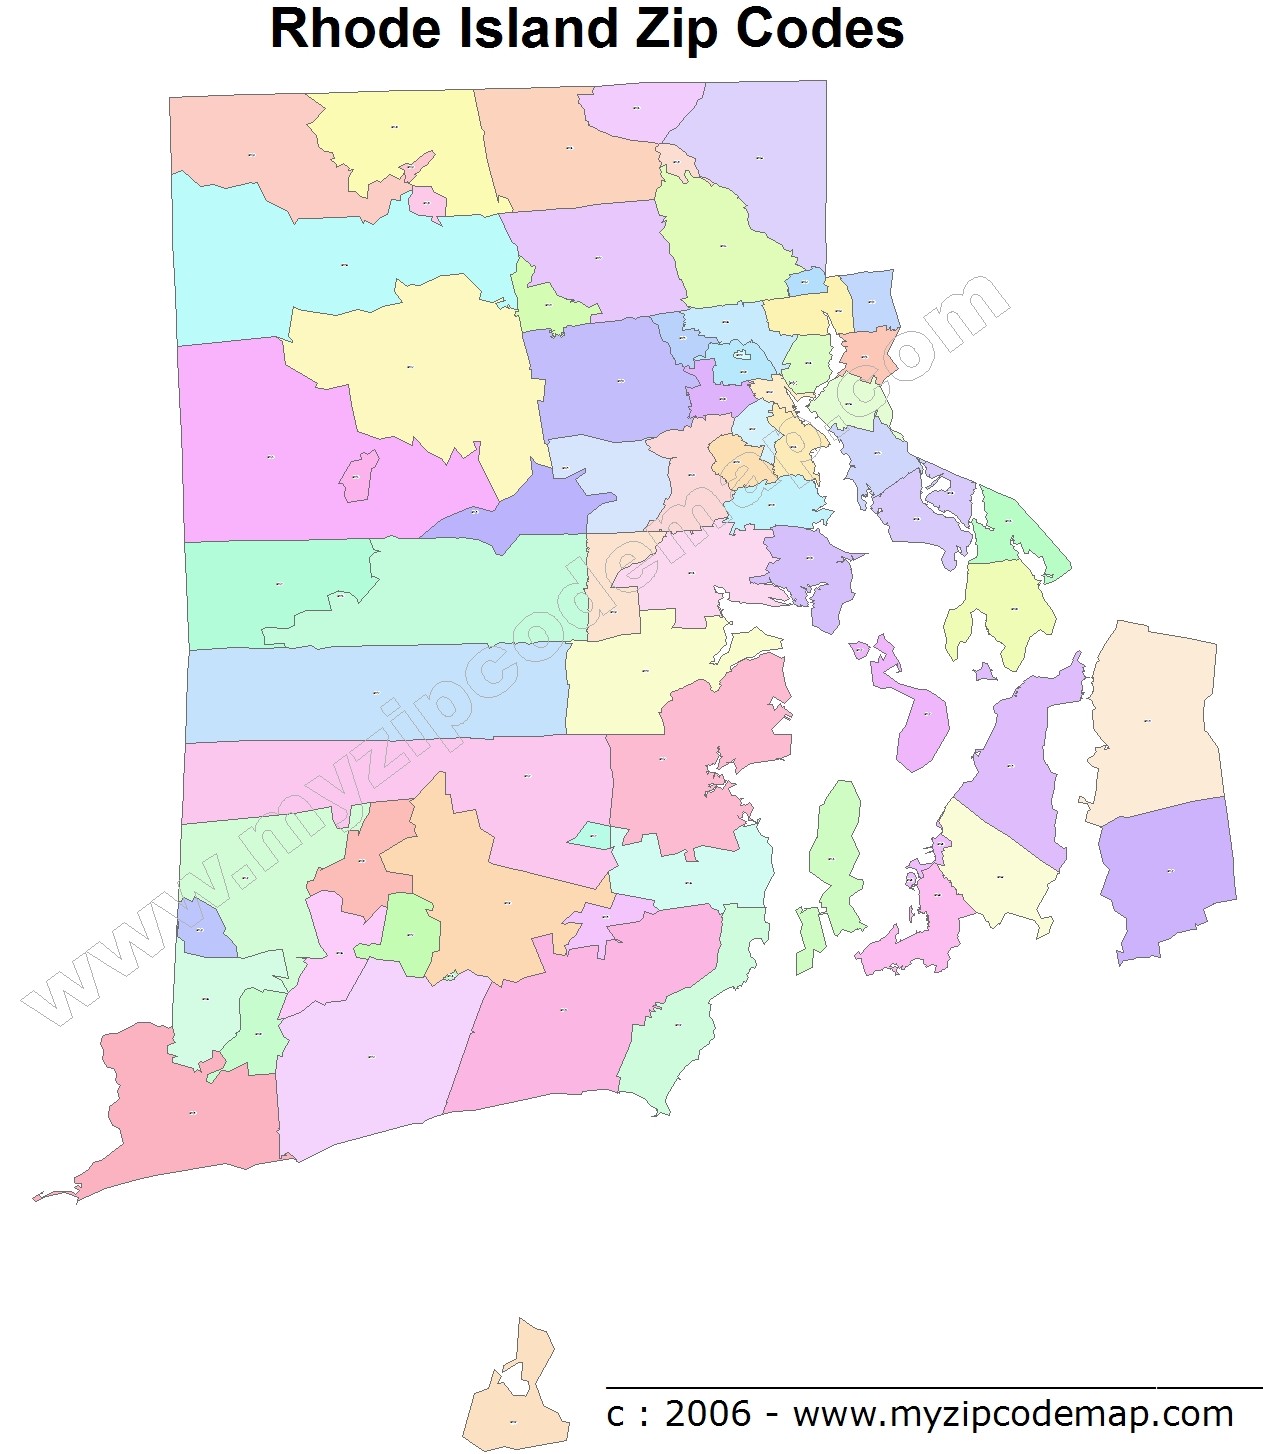 Rhode Island Zip Code Maps - Free Rhode Island Zip Code Maps